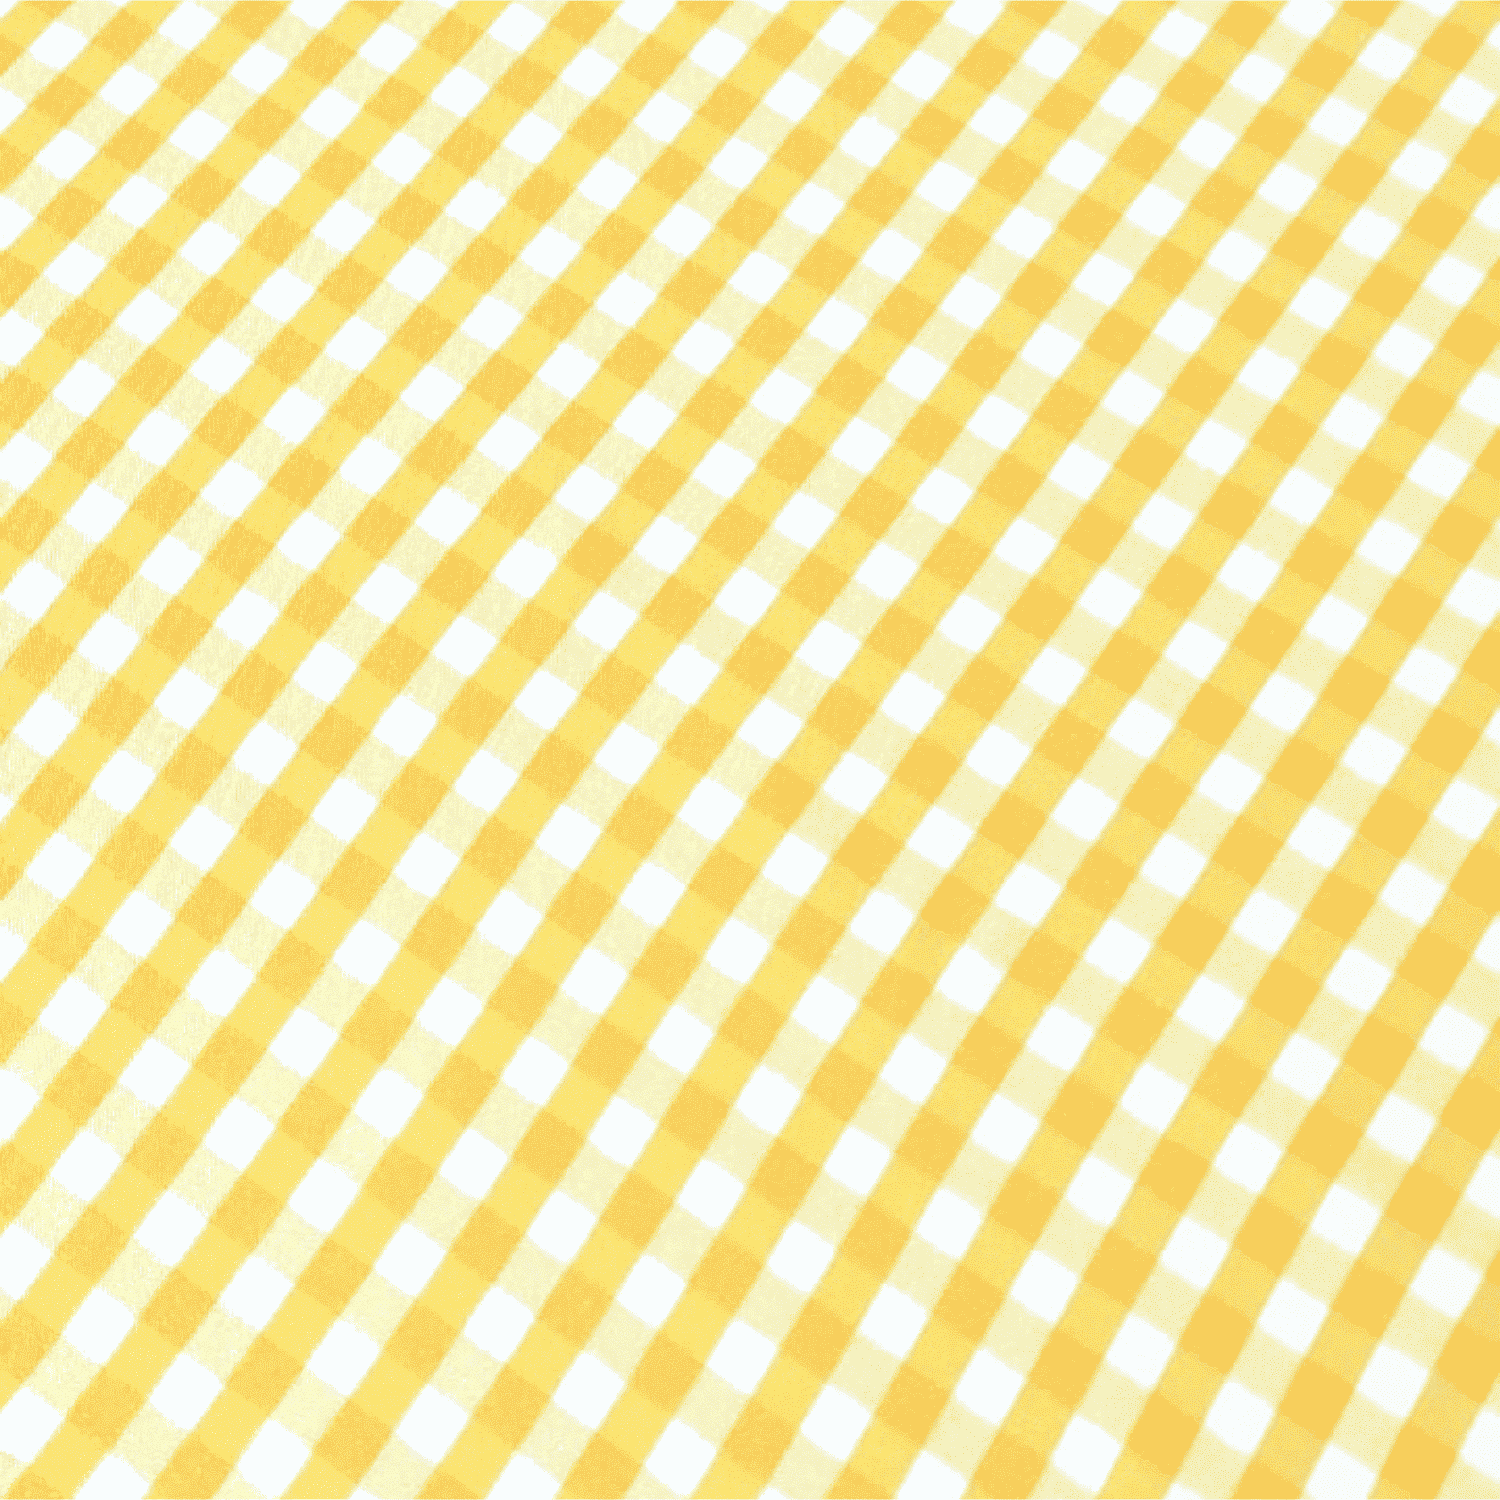 quadretto-giallo-austin-tovaglia-antimacchia-idrorepellente-quadratini-geometrico-bianco-giallo-dettaglio